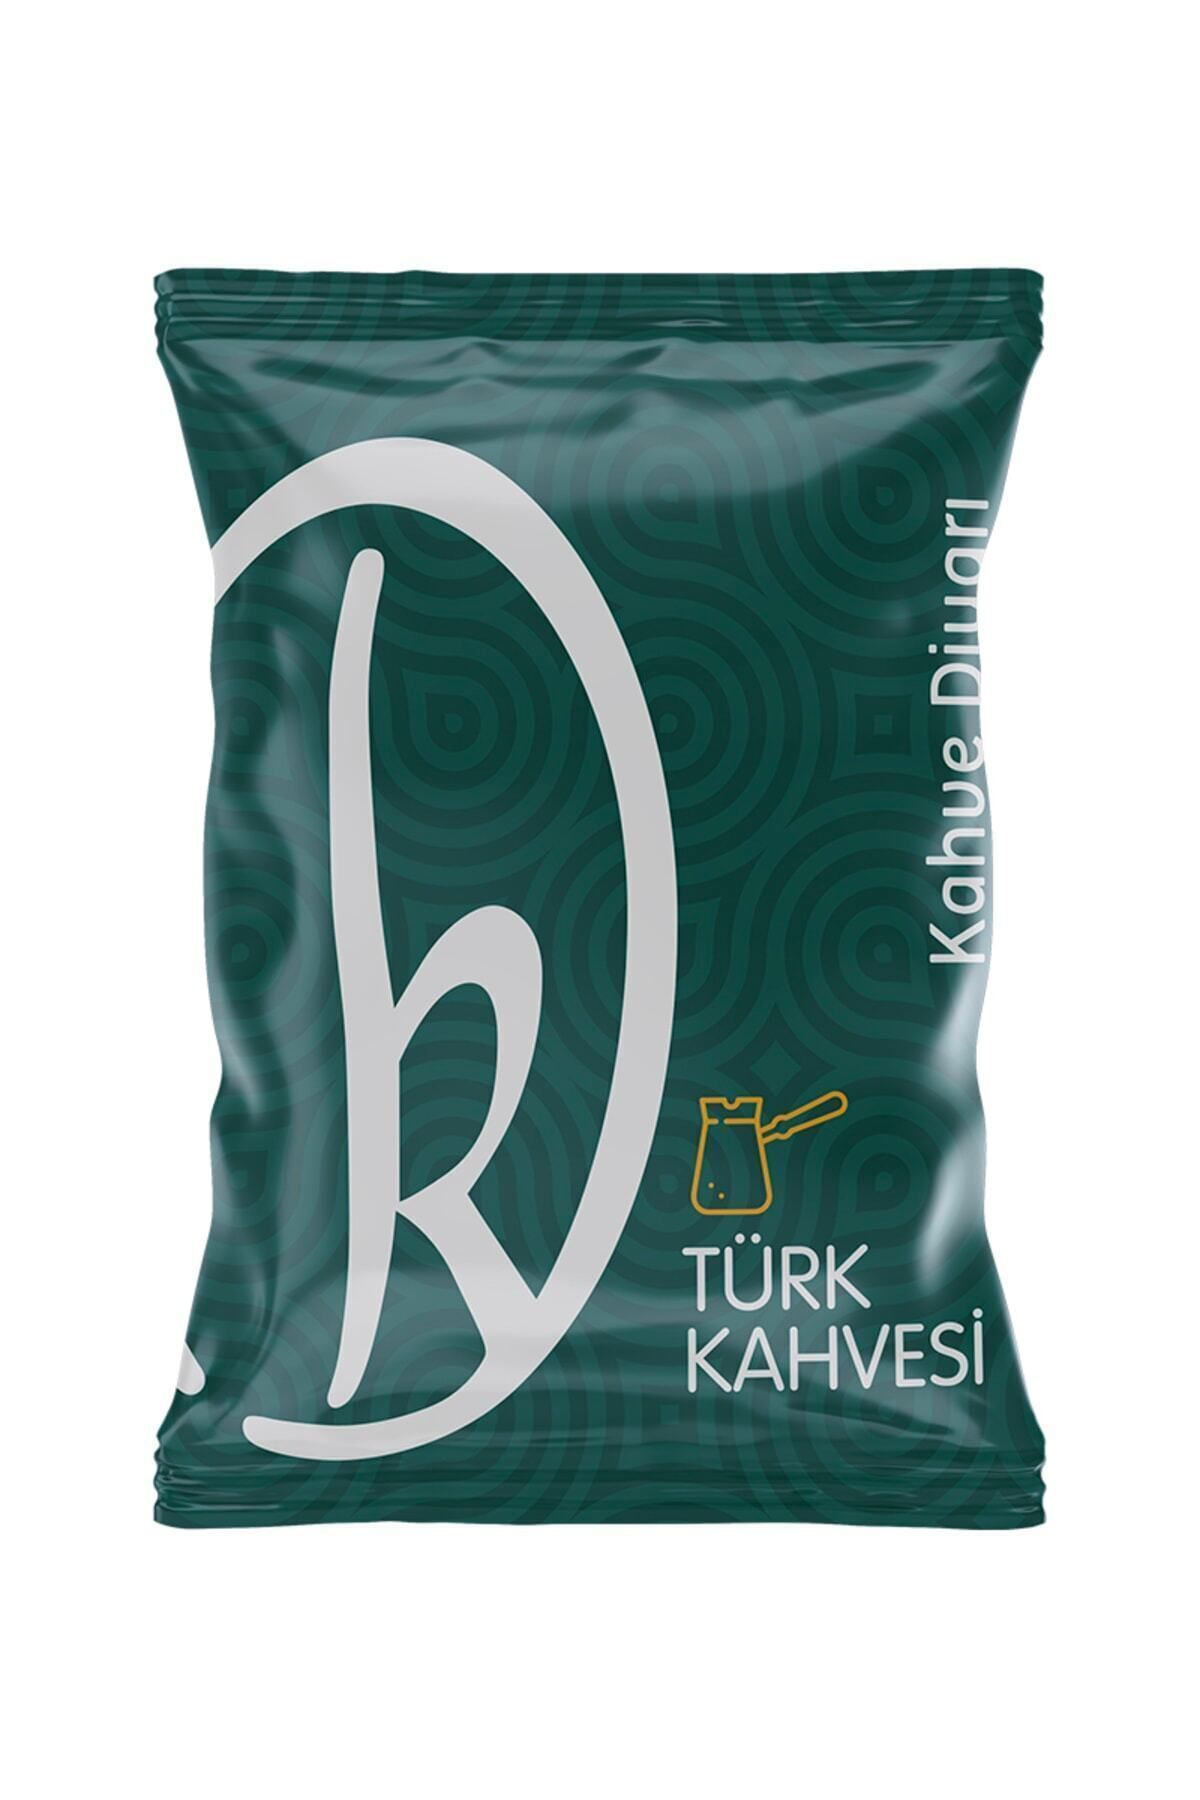 Kahve Diyarı Türk Kahvesi 100 gr.